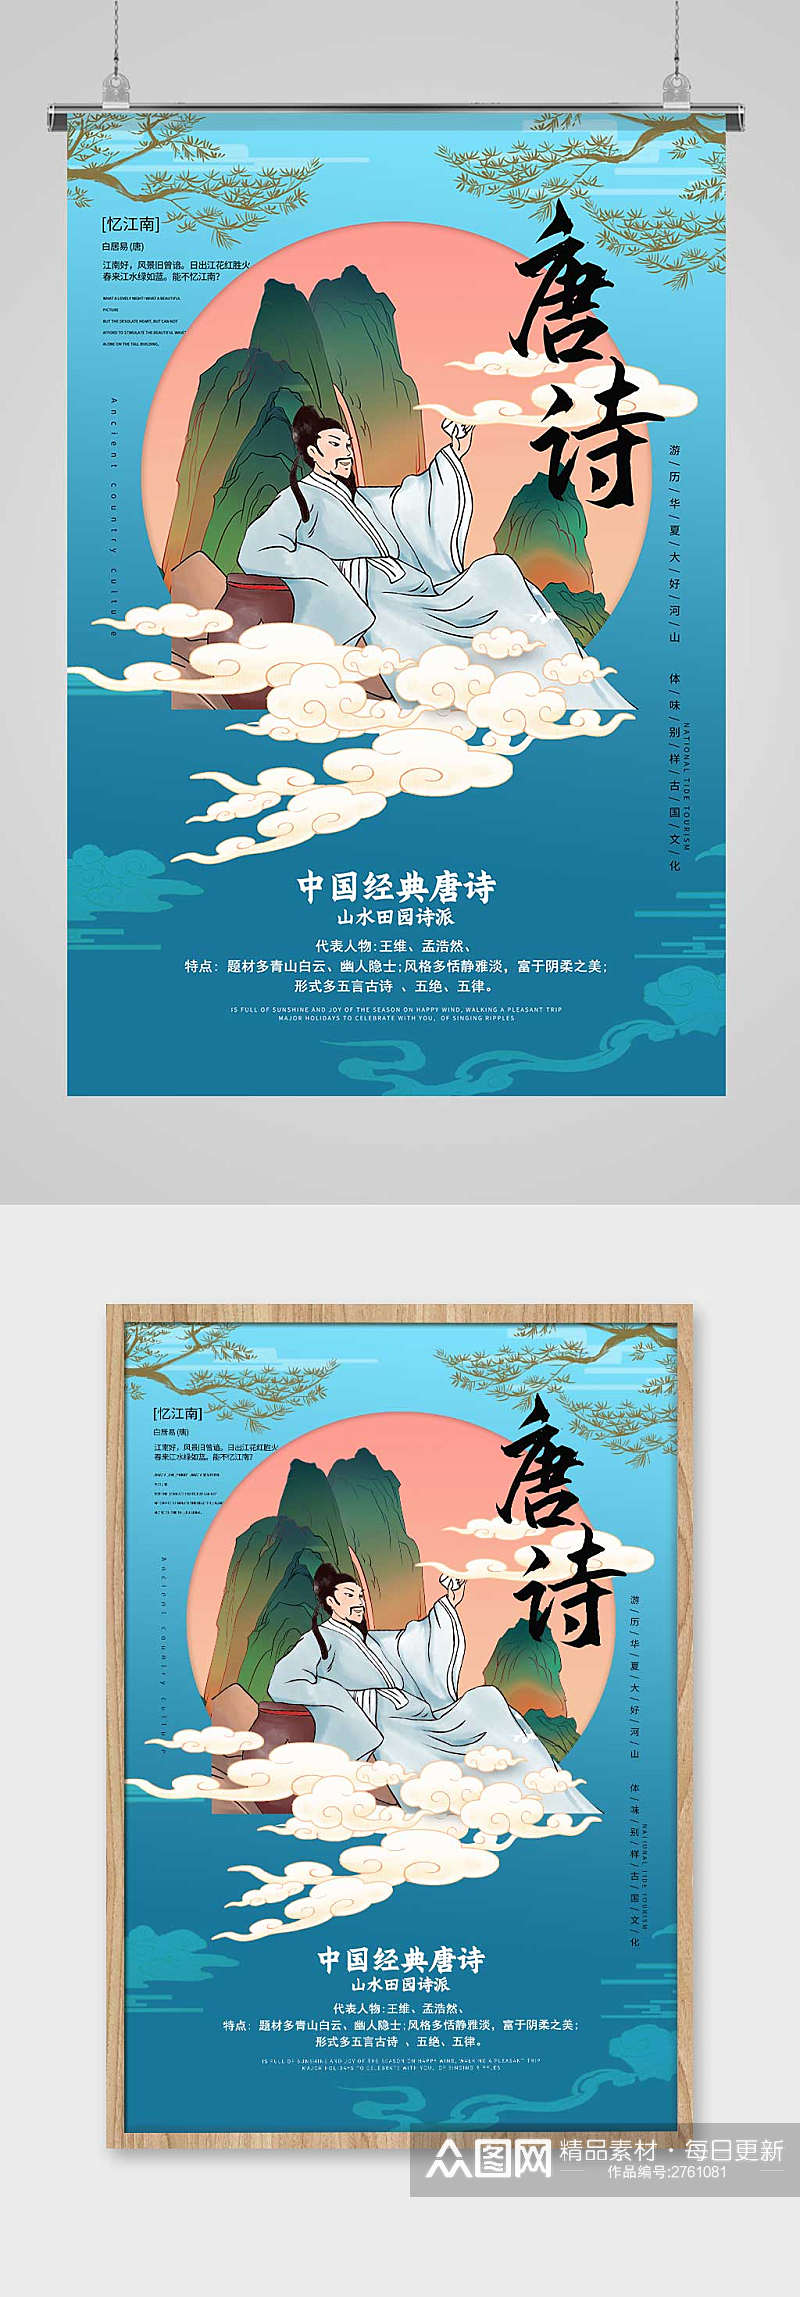 中国风唐诗中国文化宣传海报设计素材